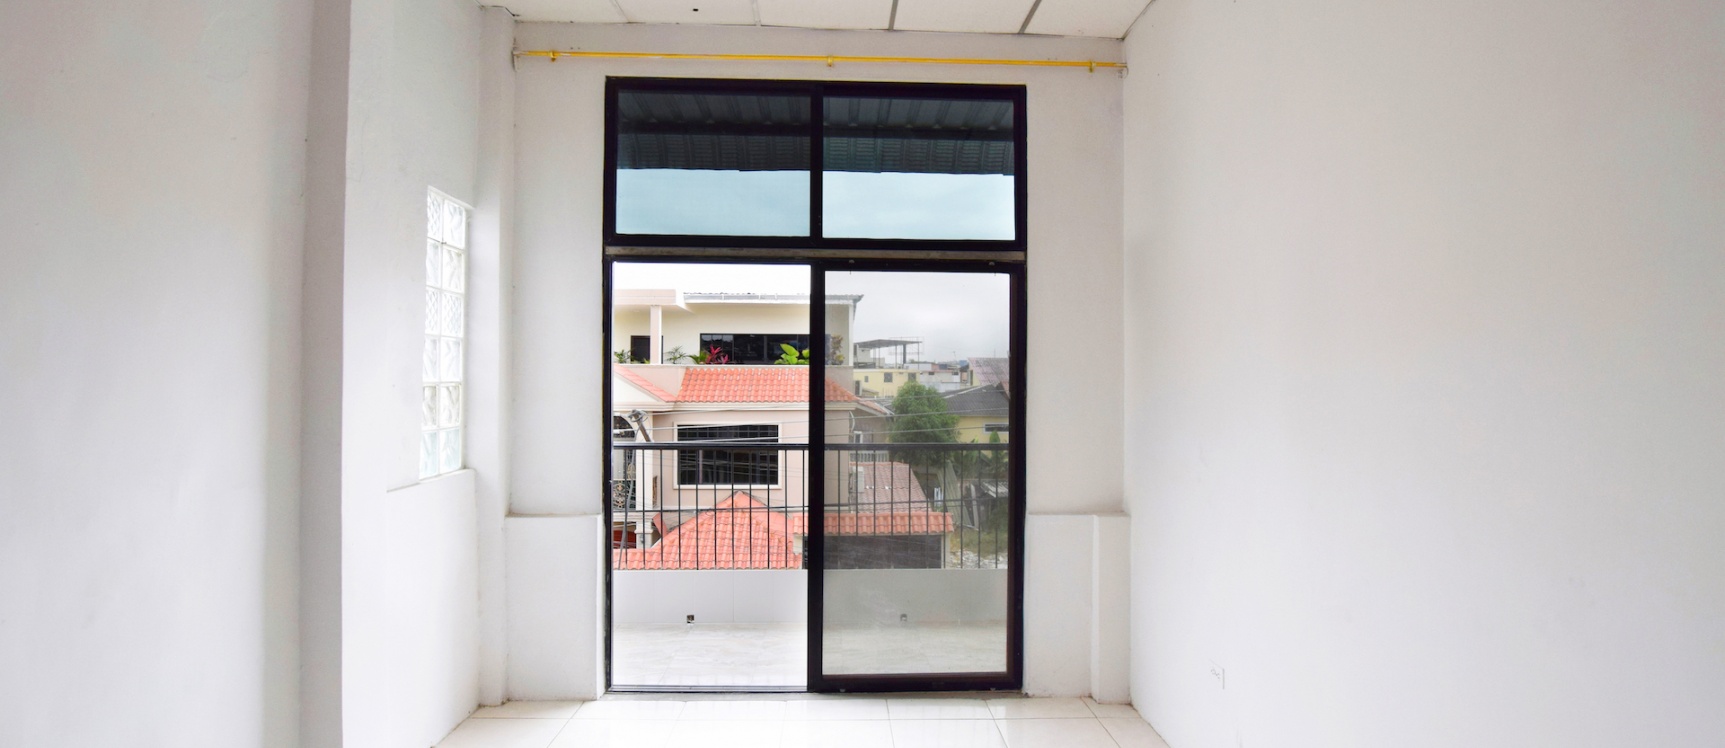 GeoBienes - Departamento en alquiler en Urdenor, Norte de Guayaquil - Plusvalia Guayaquil Casas de venta y alquiler Inmobiliaria Ecuador